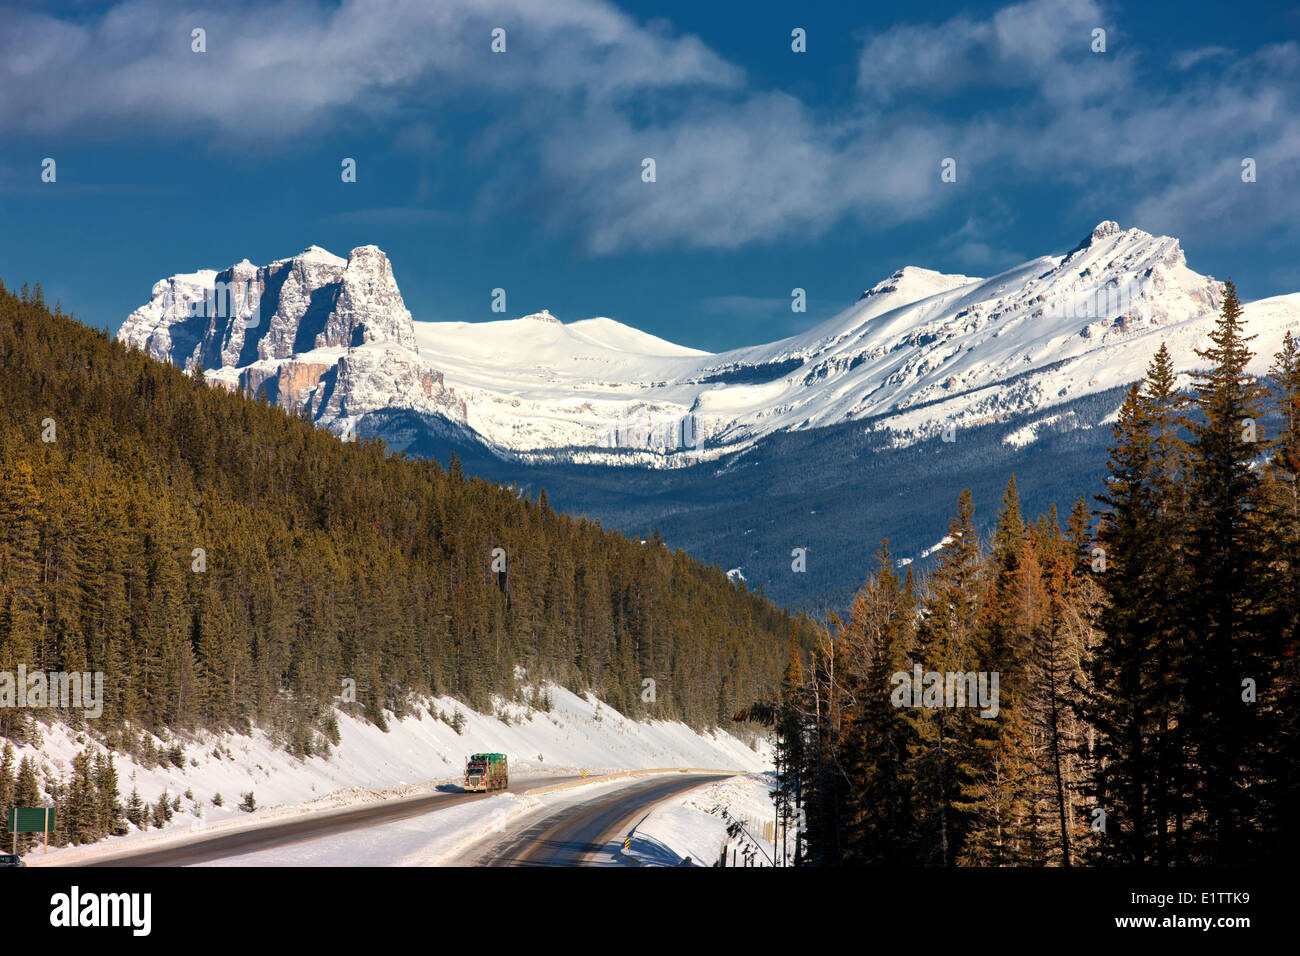 Camion de transport sur route transcanadienne avec Château montagne en arrière-plan, Banff National Park, Alberta, Canada Banque D'Images